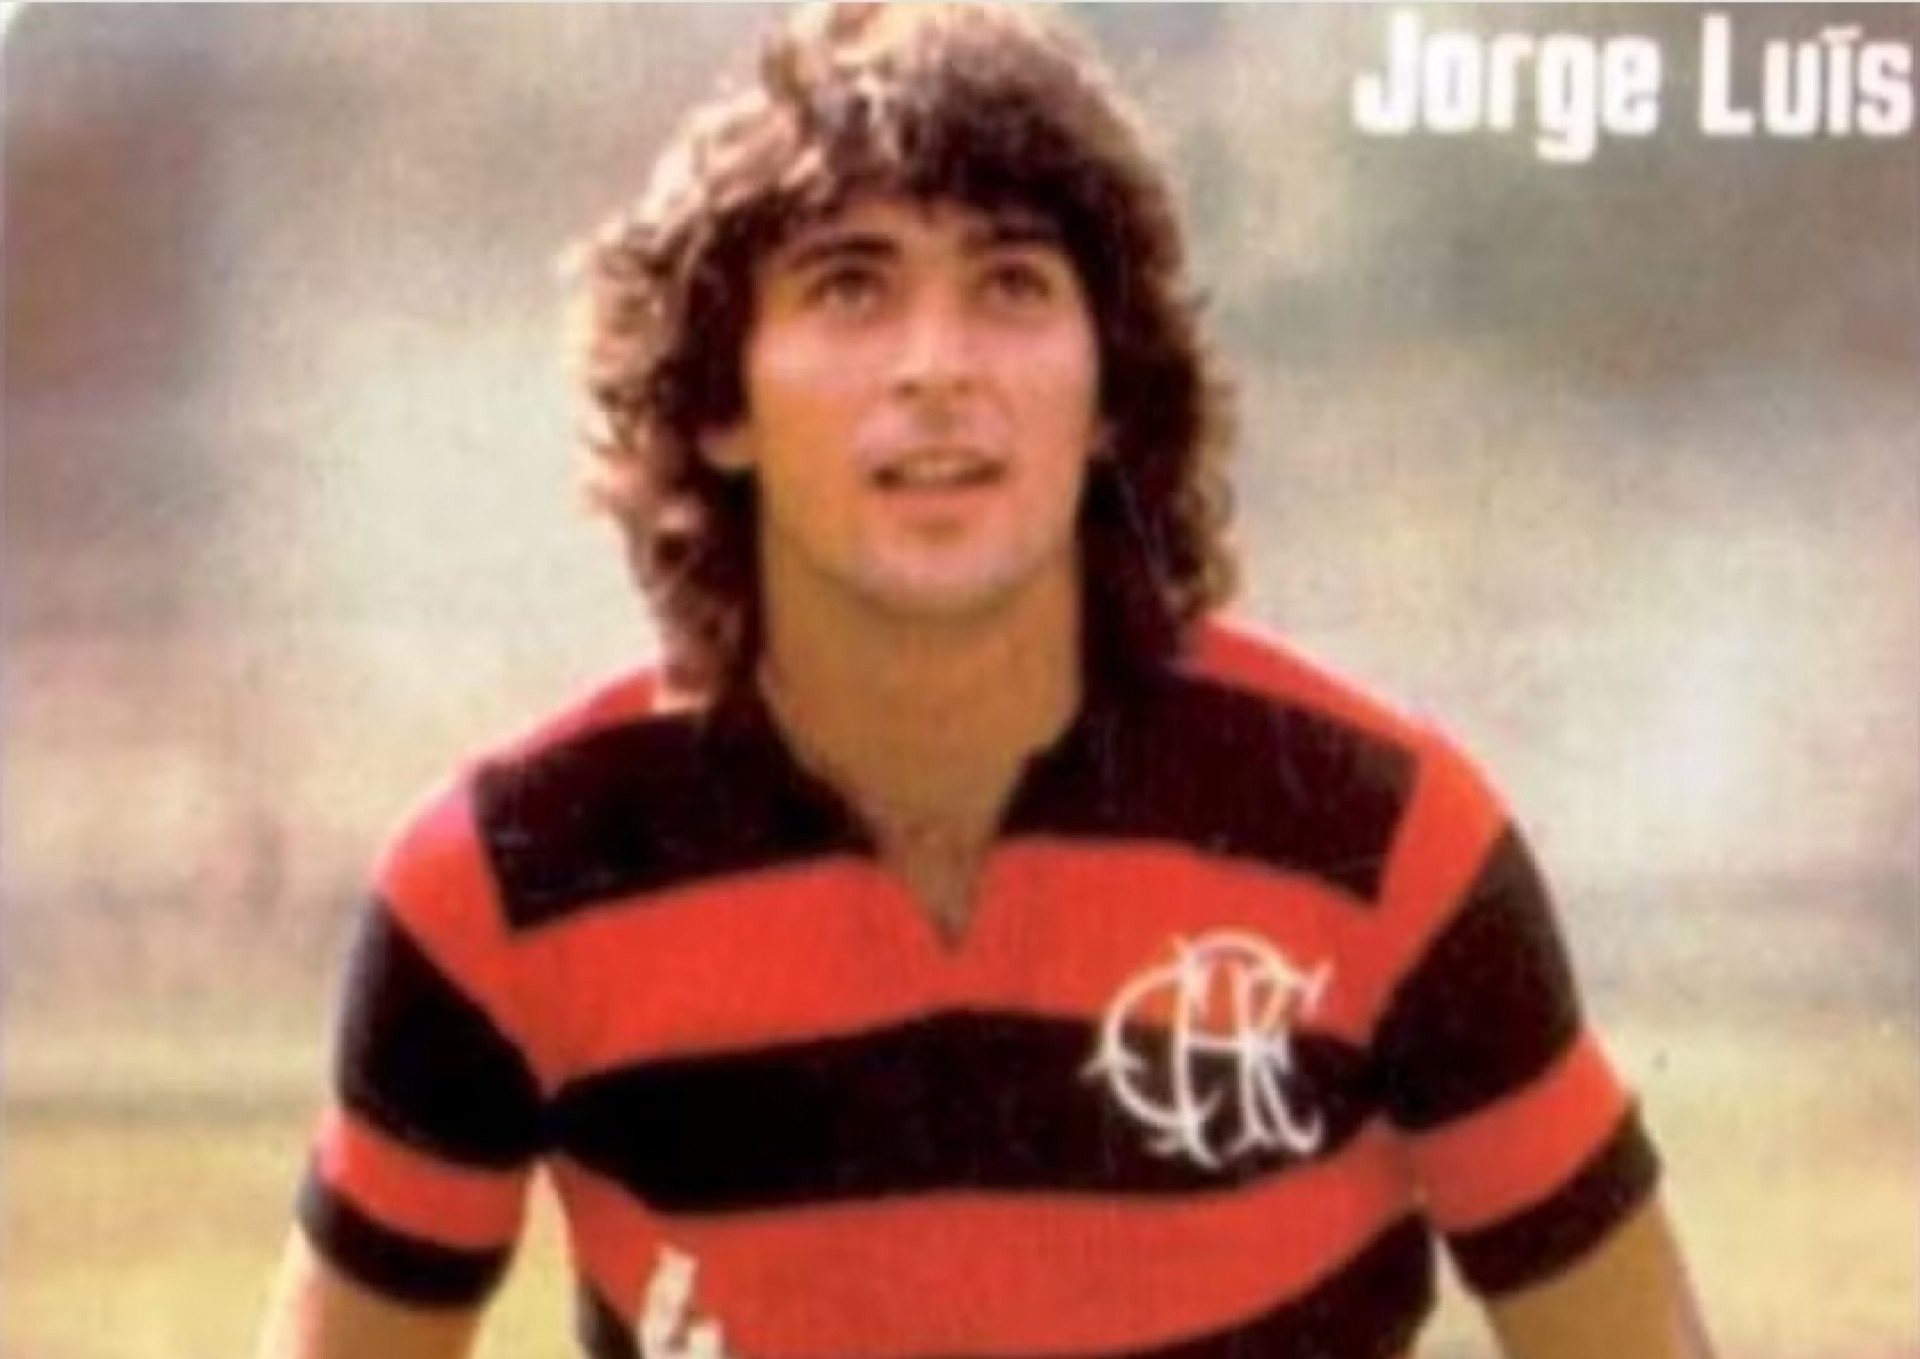 Jorge Luís, ex-atacante do Flamengo, morreu aos 66 anos - Reprodução